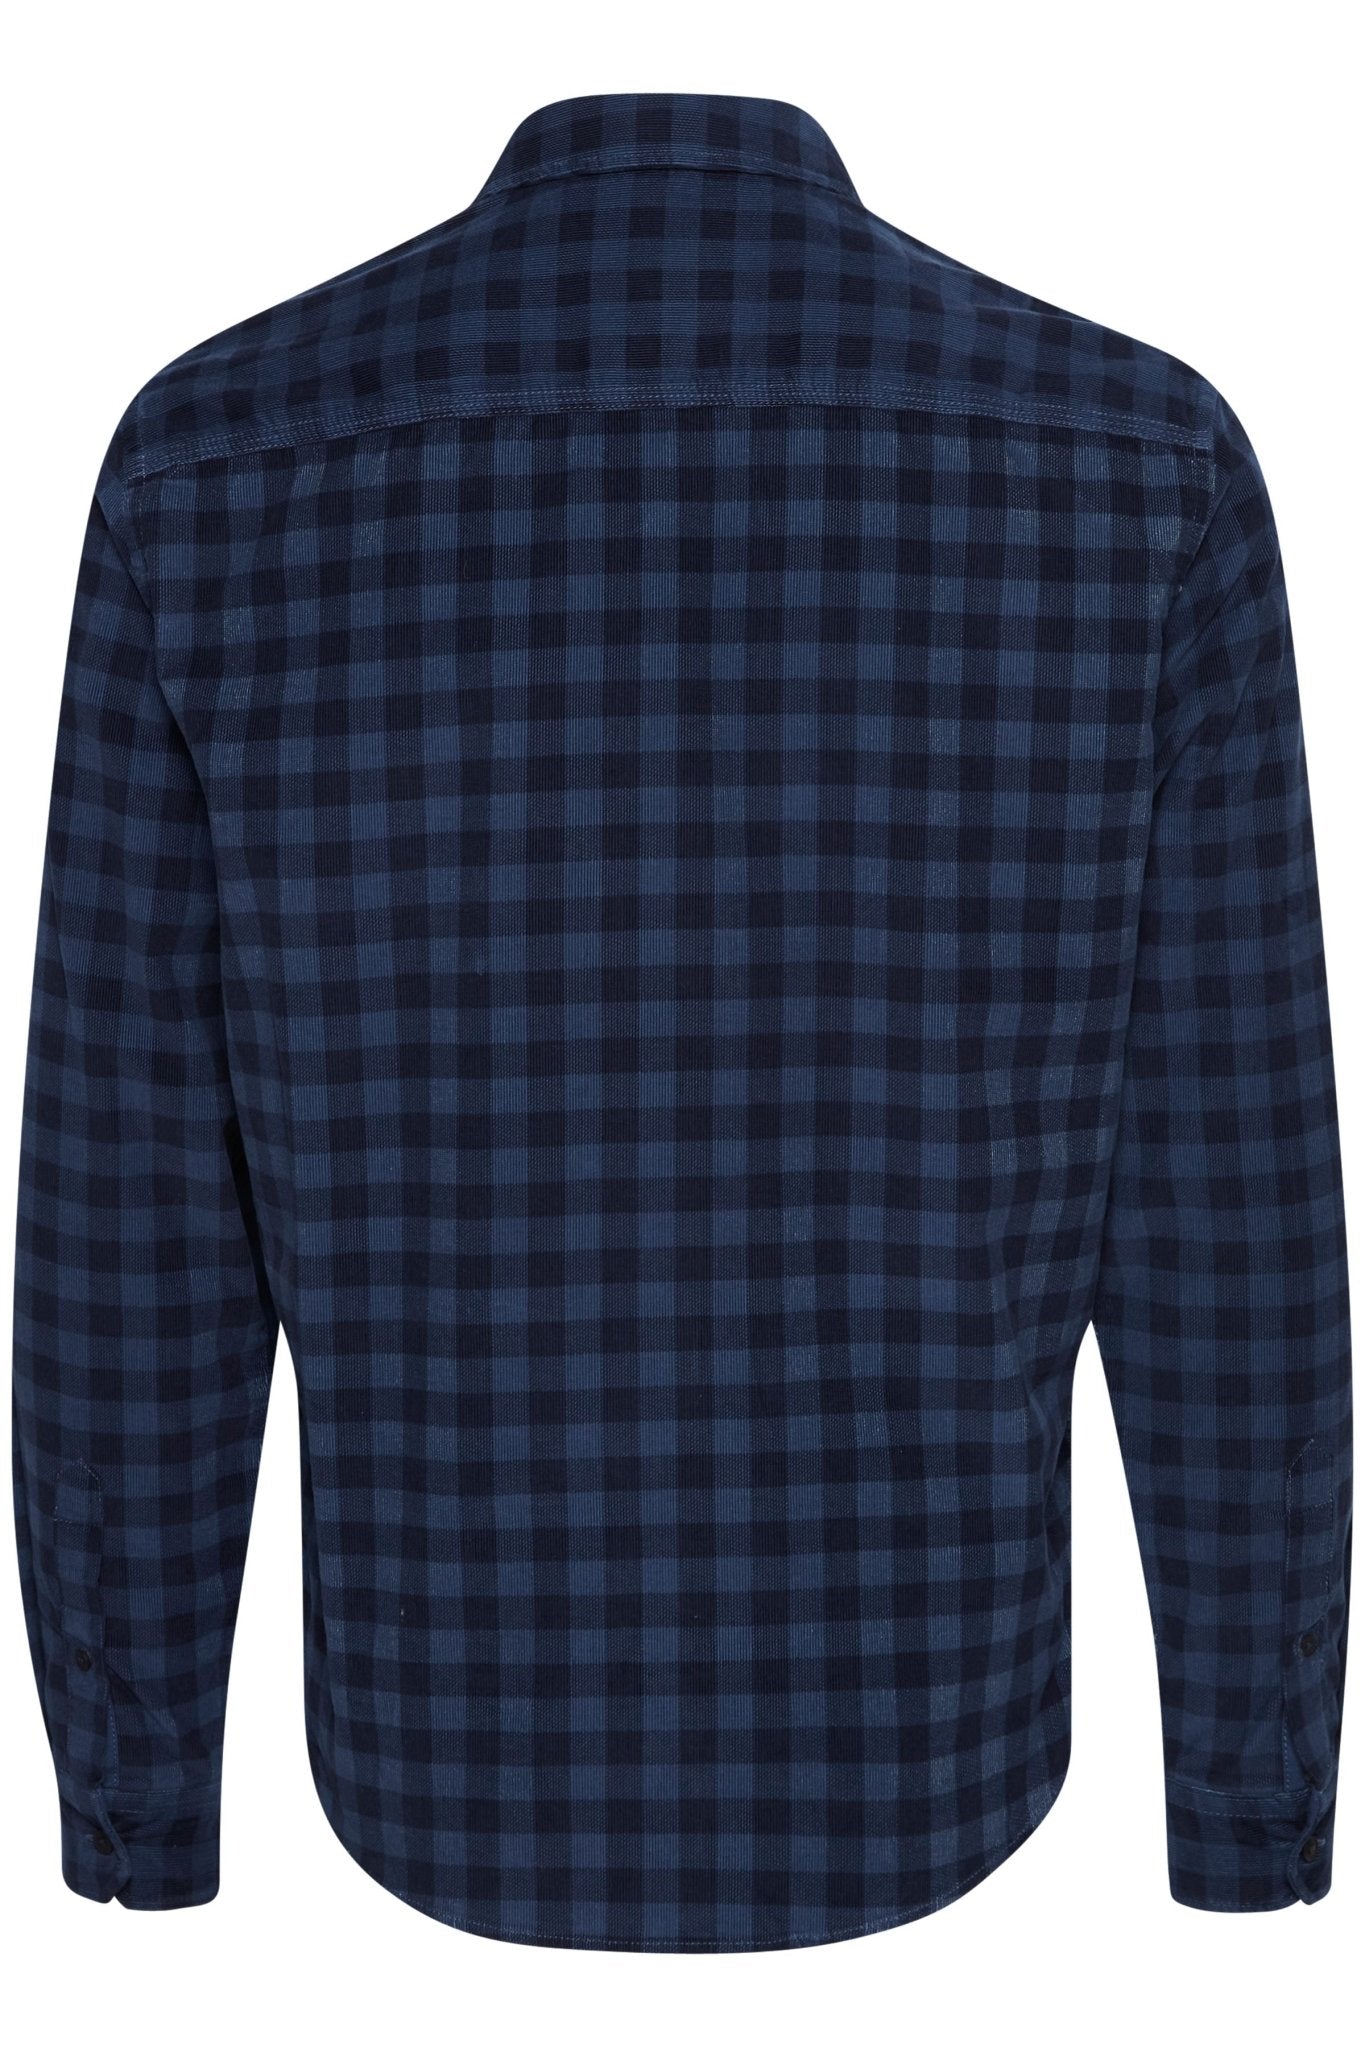 Blend 20712872 He Shirt - Thomson's Suits Ltd - Ensign Blue - M - 61300